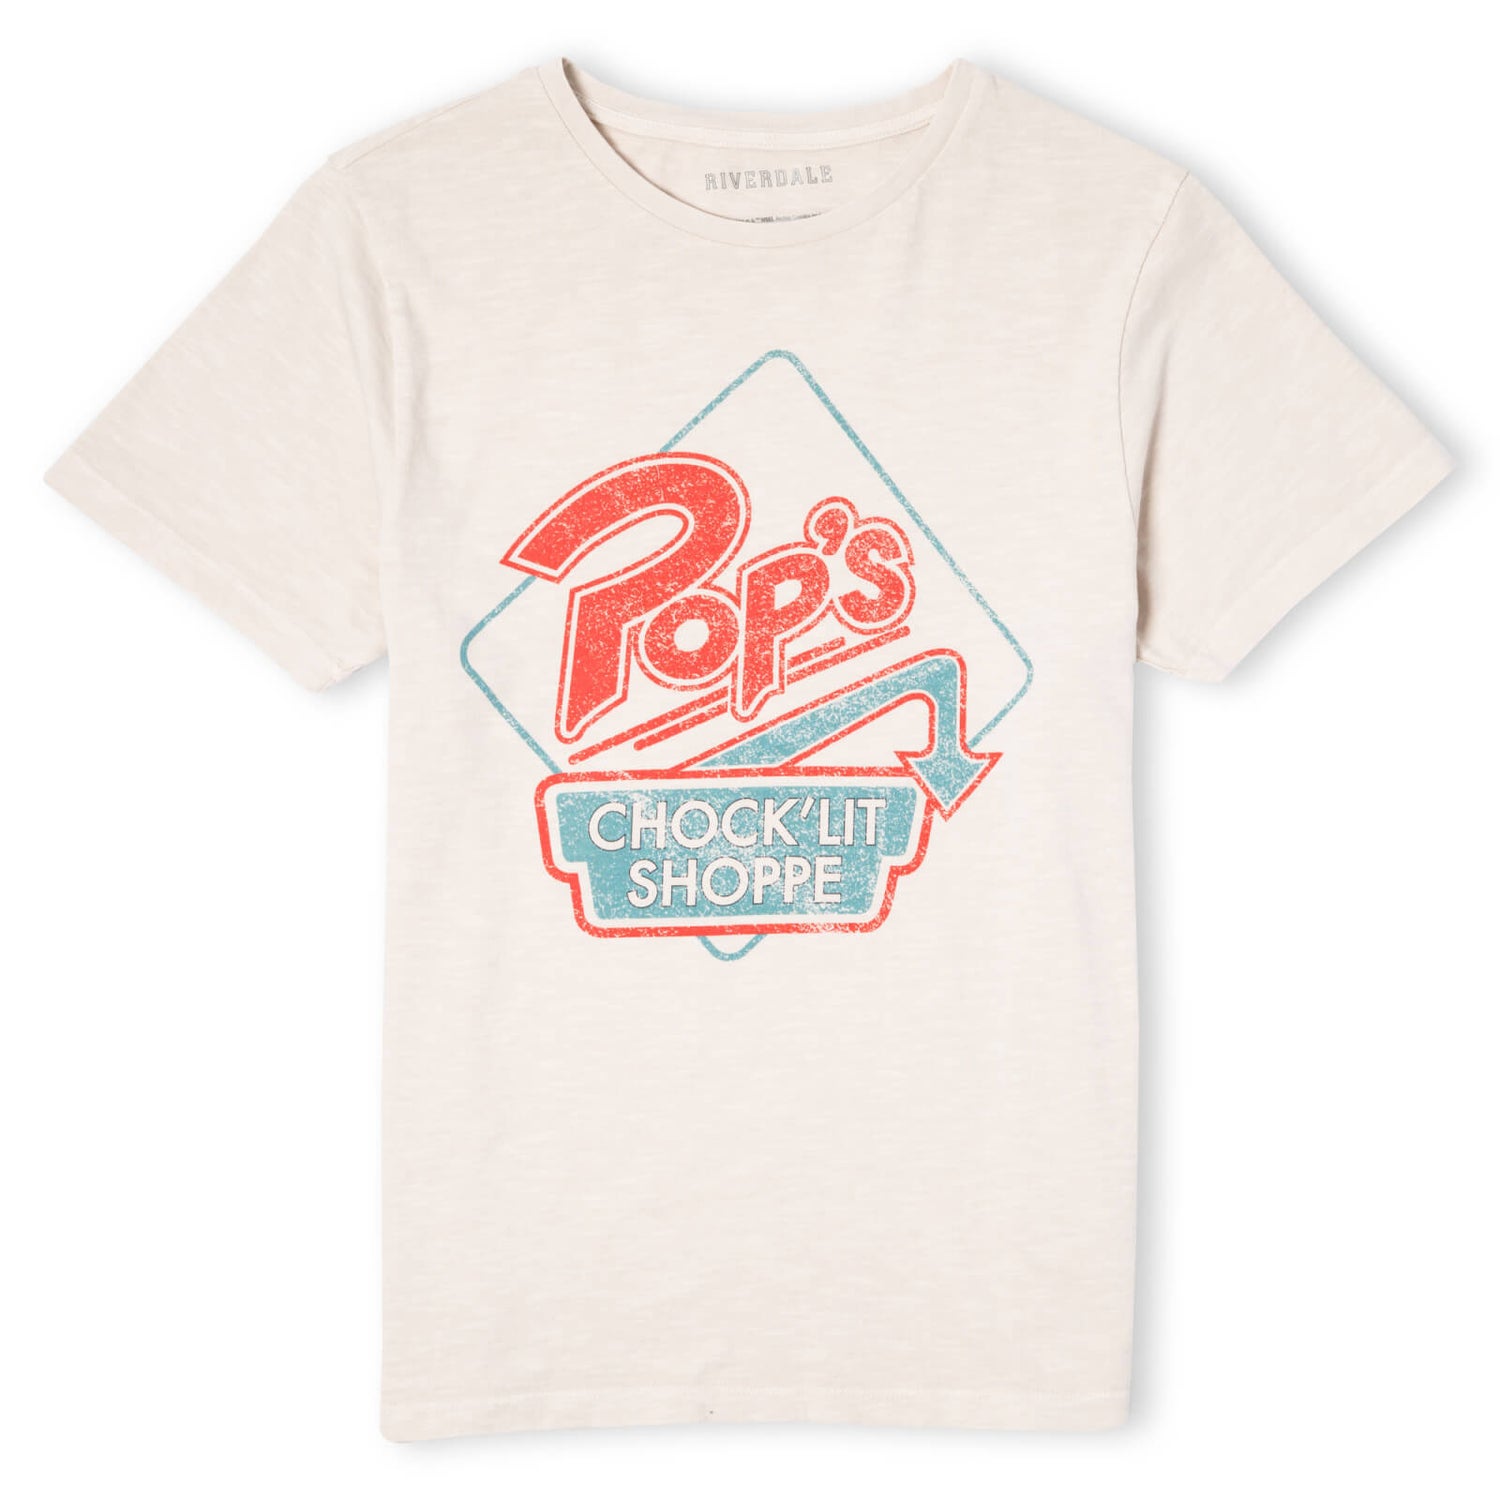 Riverdale Pop's Choclit Shop Unisex T-Shirt - White Vintage Wash